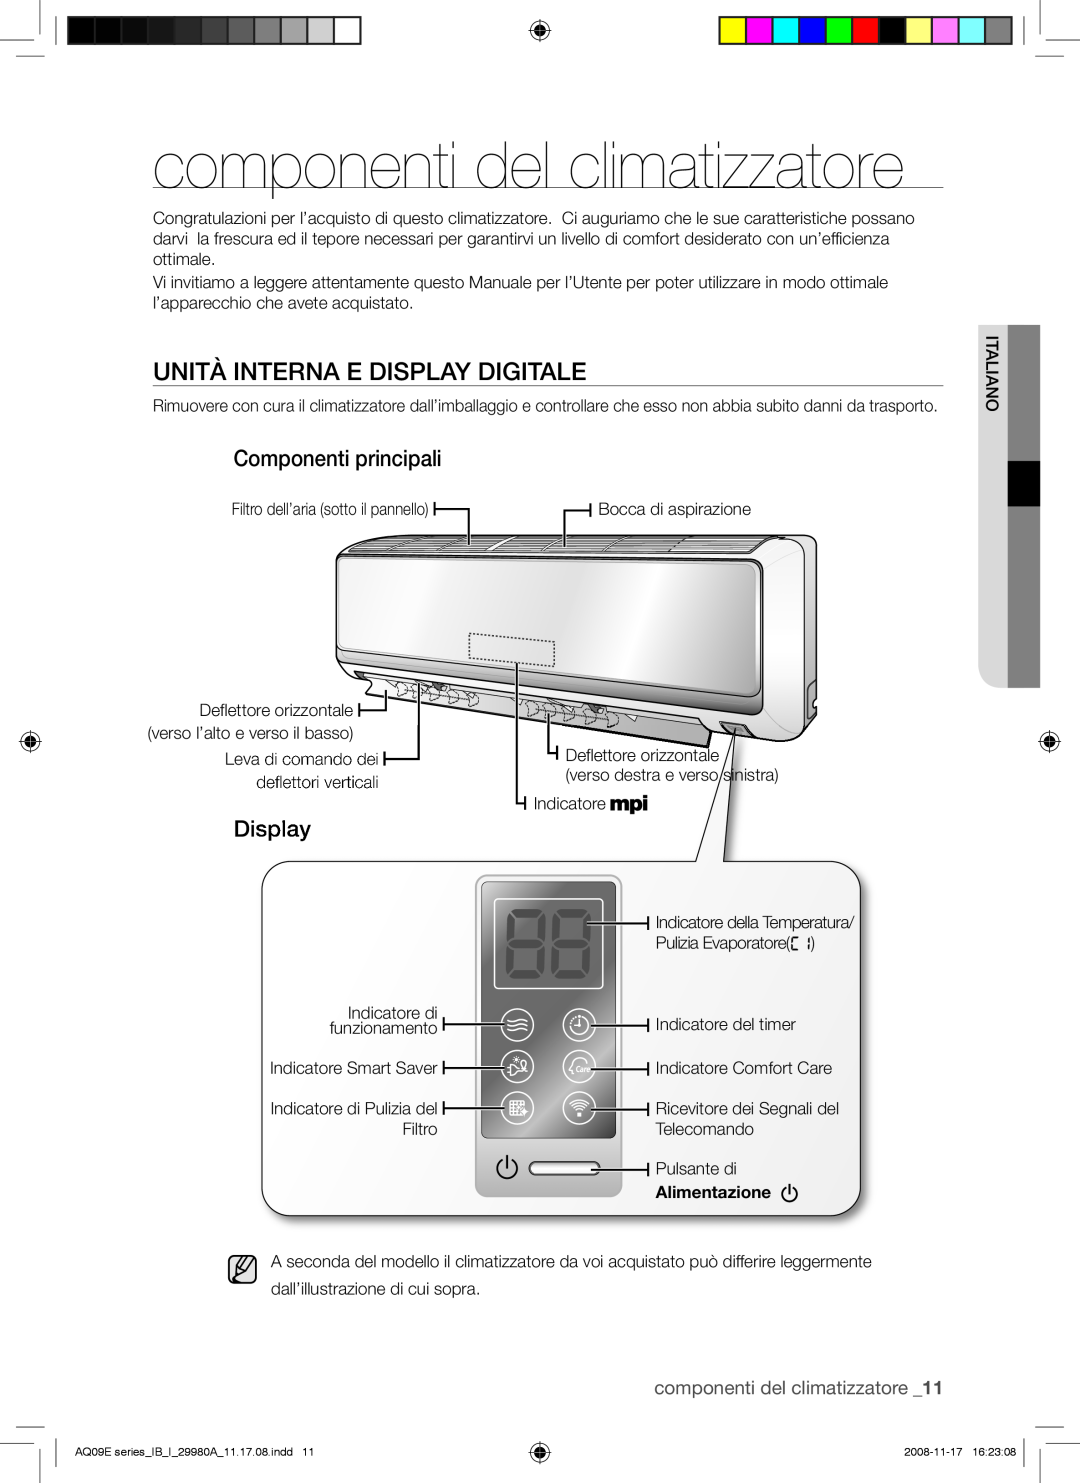 Samsung AQV09EWAN, AQV12EWAN manual Unità Interna E Display Digitale, Componenti principali, componenti del climatizzatore 